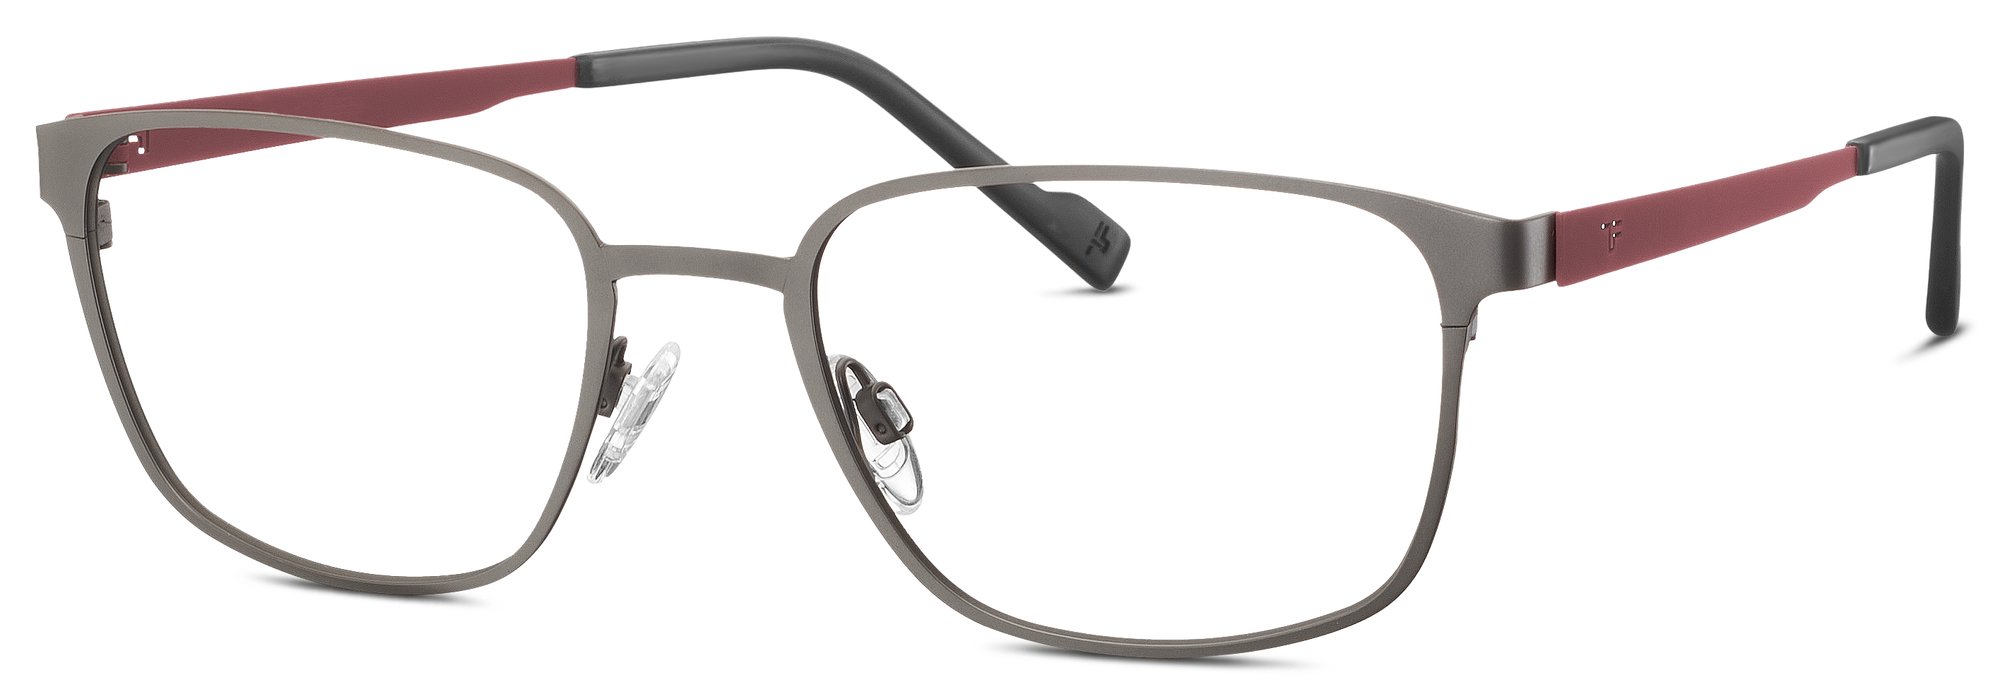 Das Bild zeigt die Korrektionsbrille 820754 35 von der Marke Titanflex in grau.